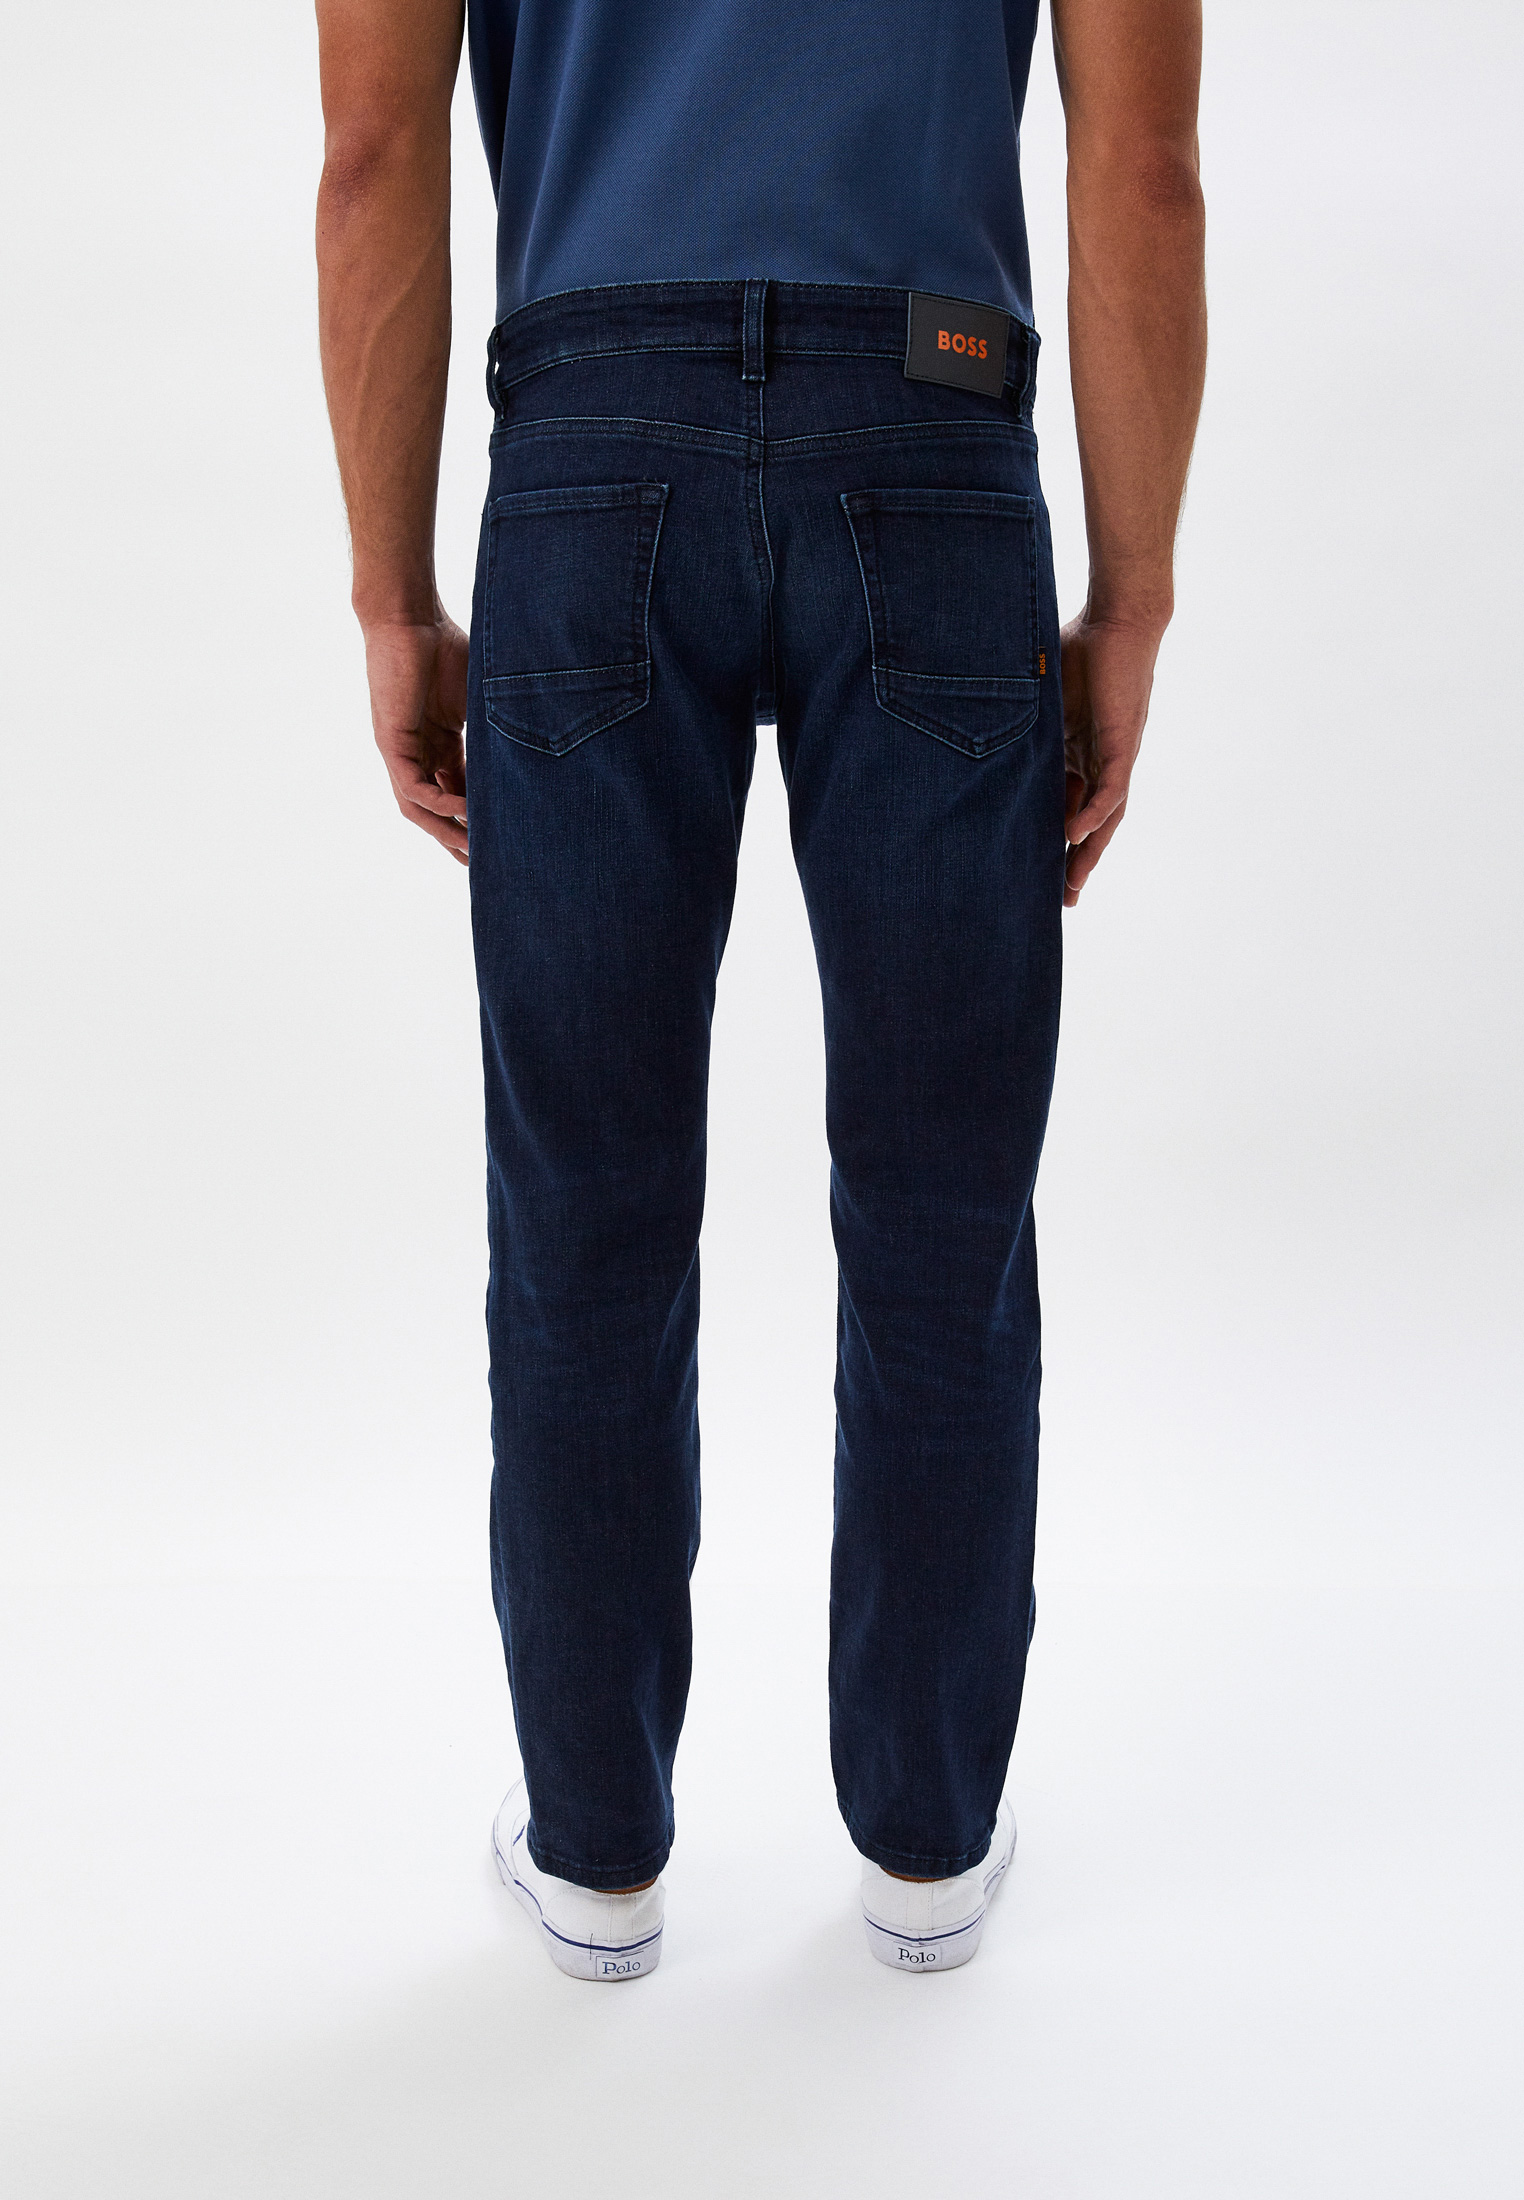 Мужские прямые джинсы Boss (Босс) 50471118: изображение 3